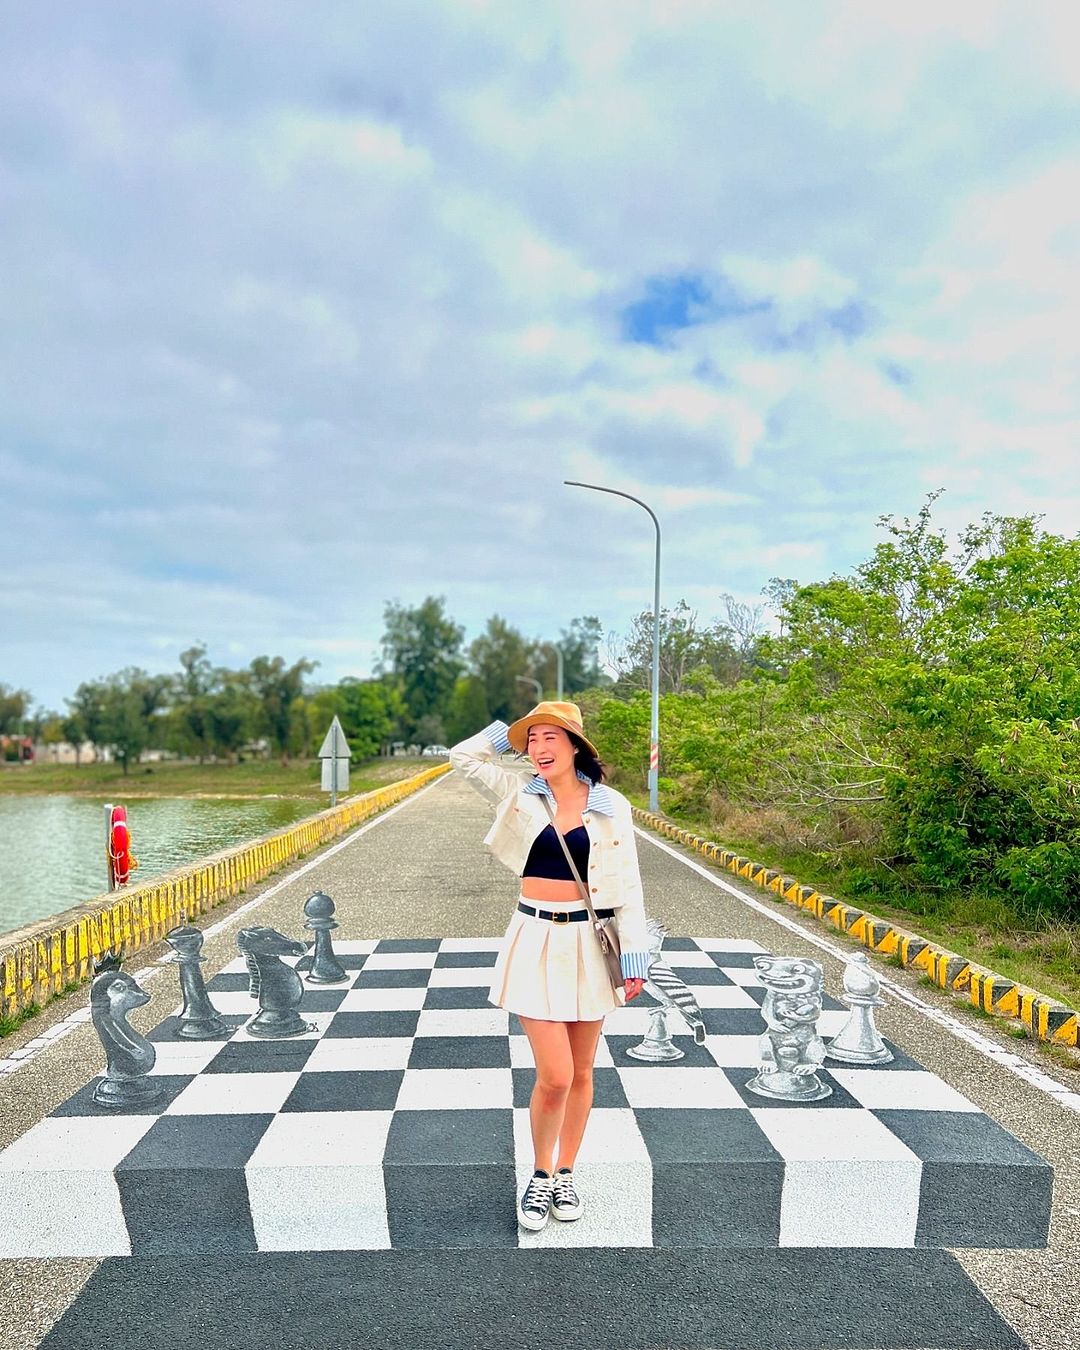 太湖
位在太湖旁有一系列的漂浮彩繪，其中一項作品是漂浮西洋棋盤，旅人站立在棋盤上可化身為一顆西洋棋，拍出逗趣的打卡照～
-
感謝 ...